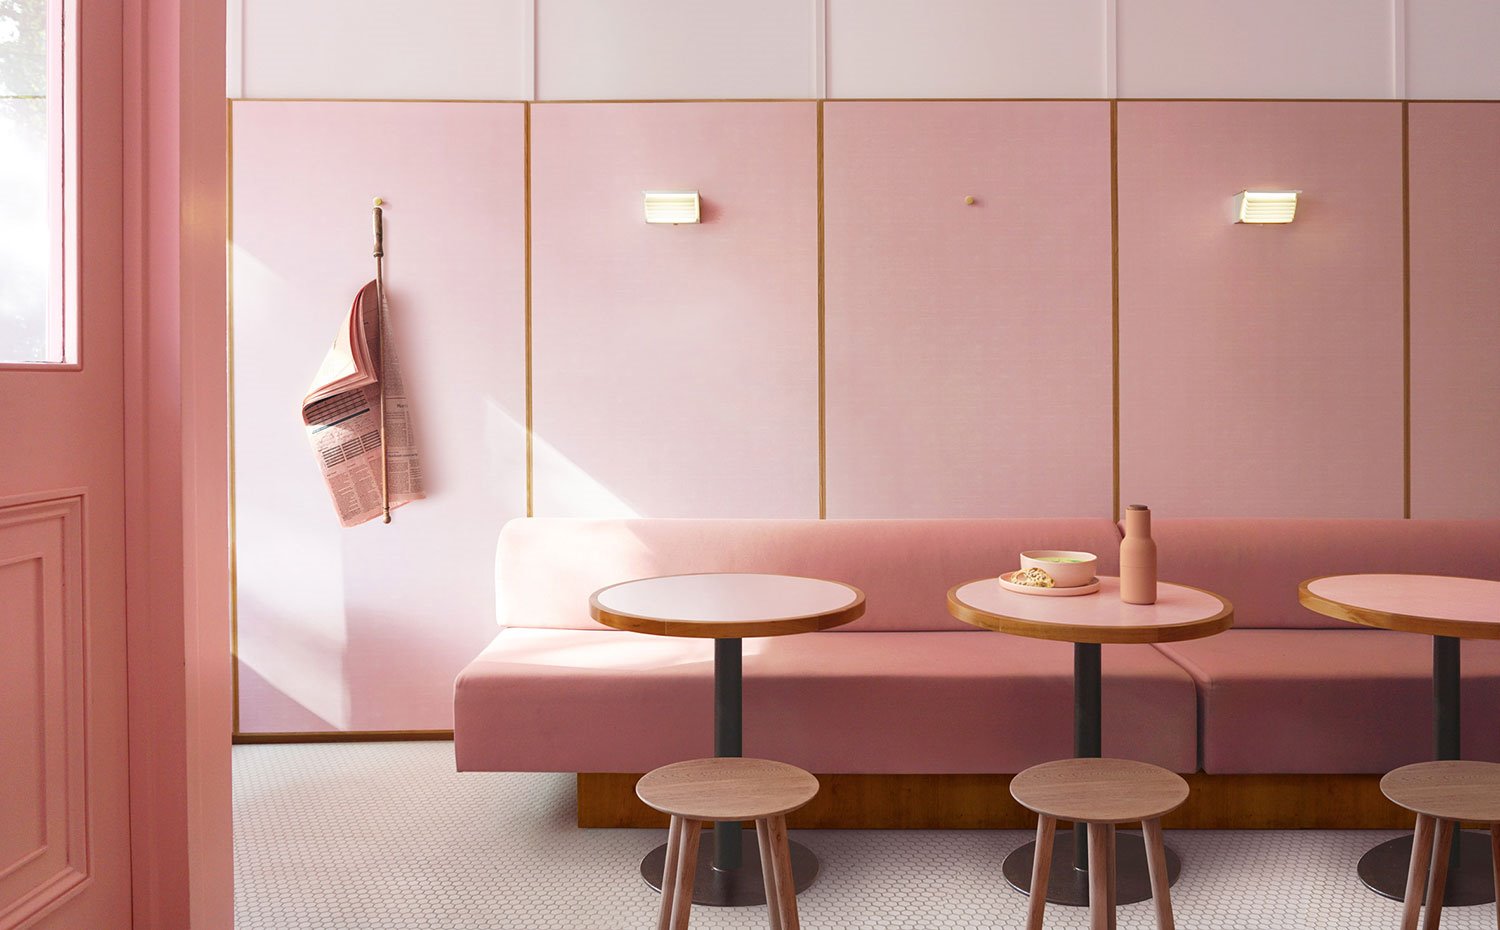 Banco corrido tapizado en rosa con base en madera, mesas circulares con base cromada, suelo de gresite, apliques pared, taburetes madera, diario colgado en pared